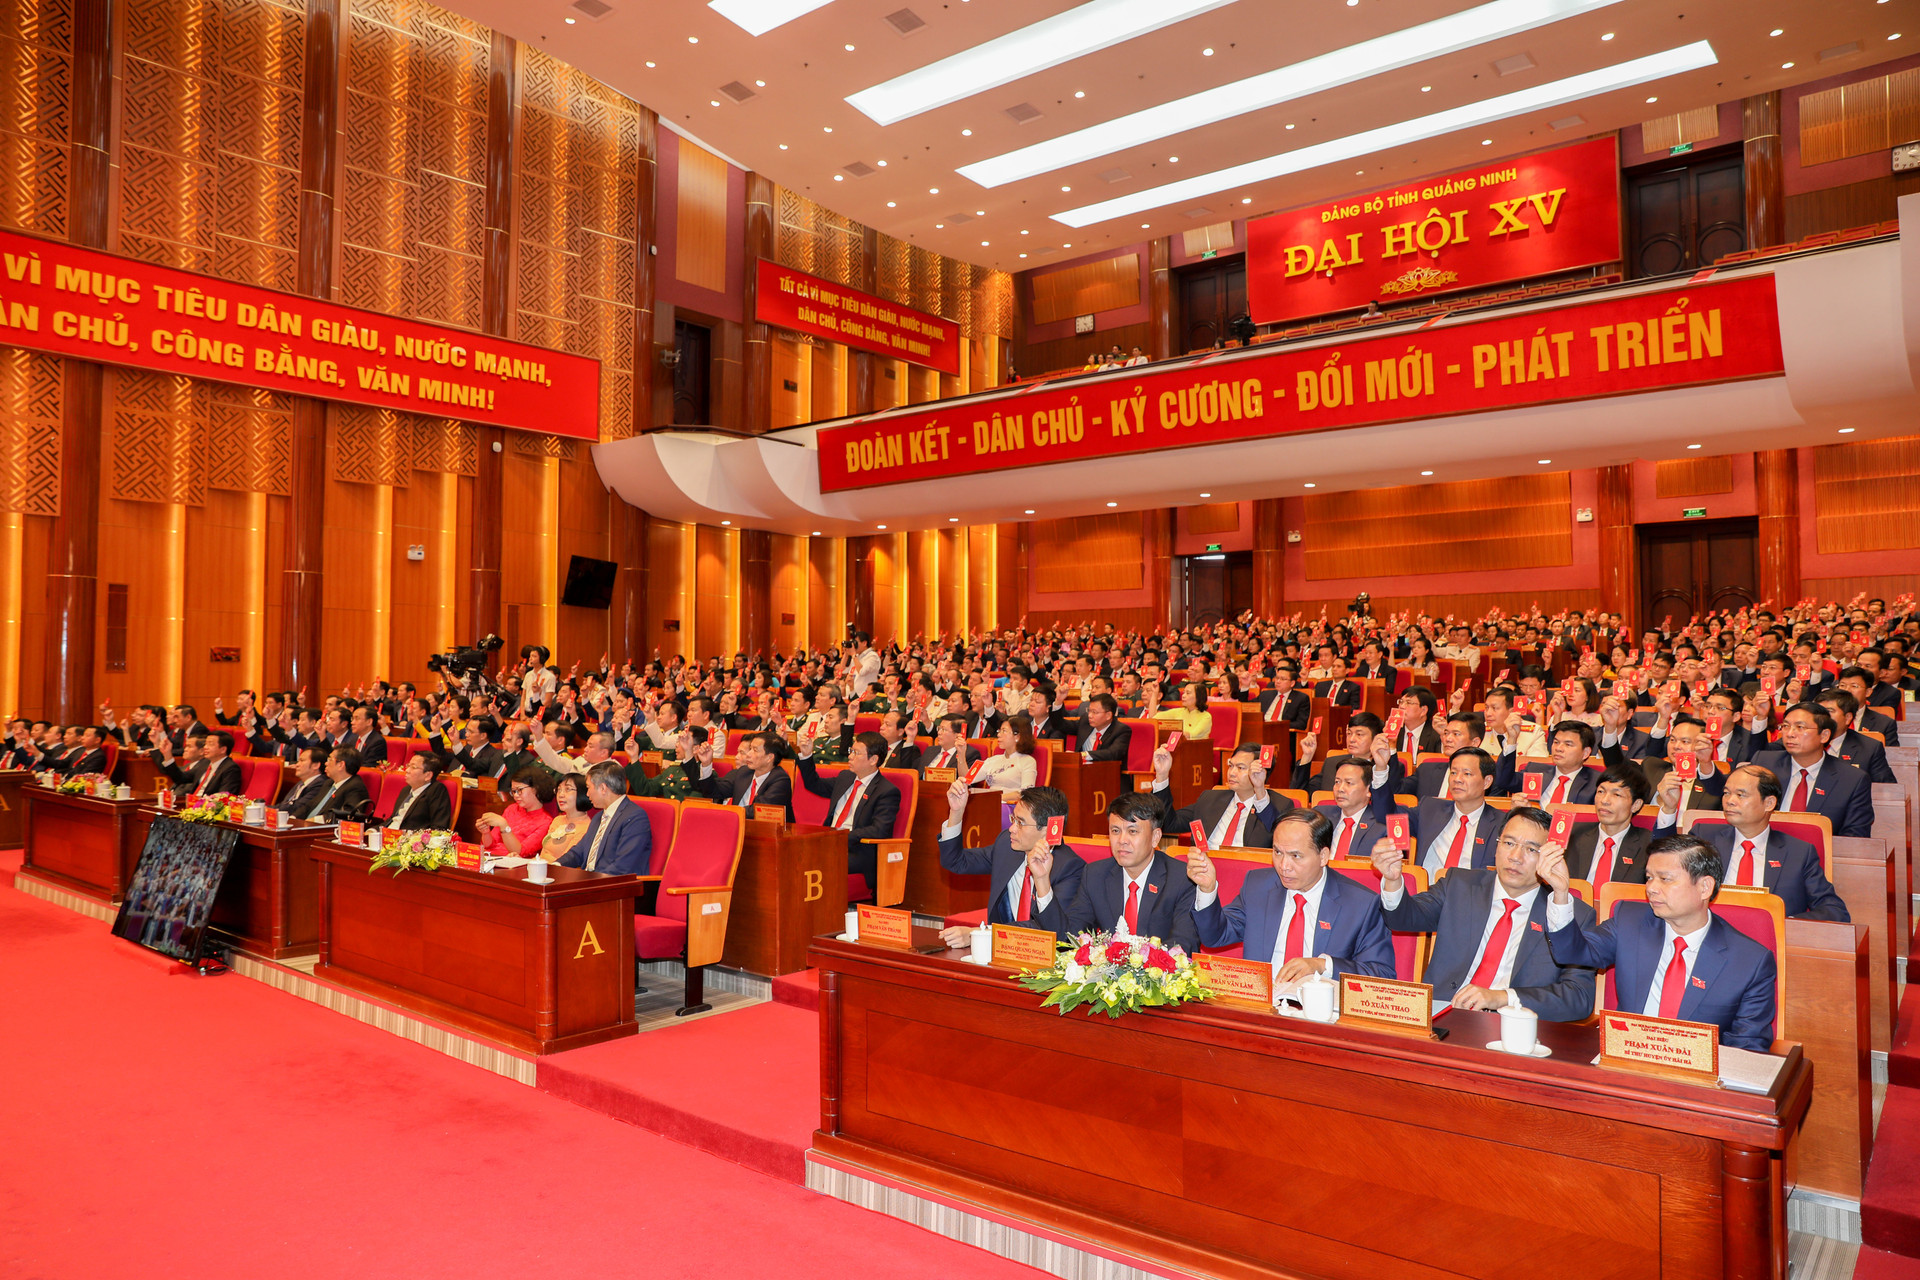 Bế mạc ĐHĐB Đảng bộ tỉnh Quảng Ninh lần thứ XV: Nâng cao đời sống nhân dân, vững chắc quốc phòng